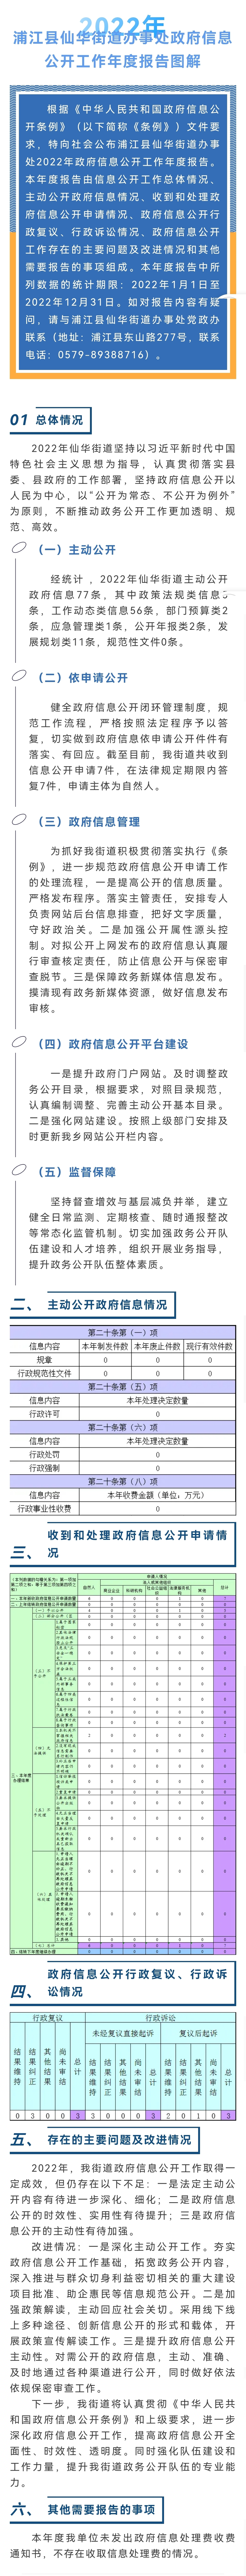 2022年仙华街道政府信息公开工作年度报告图解.jpg